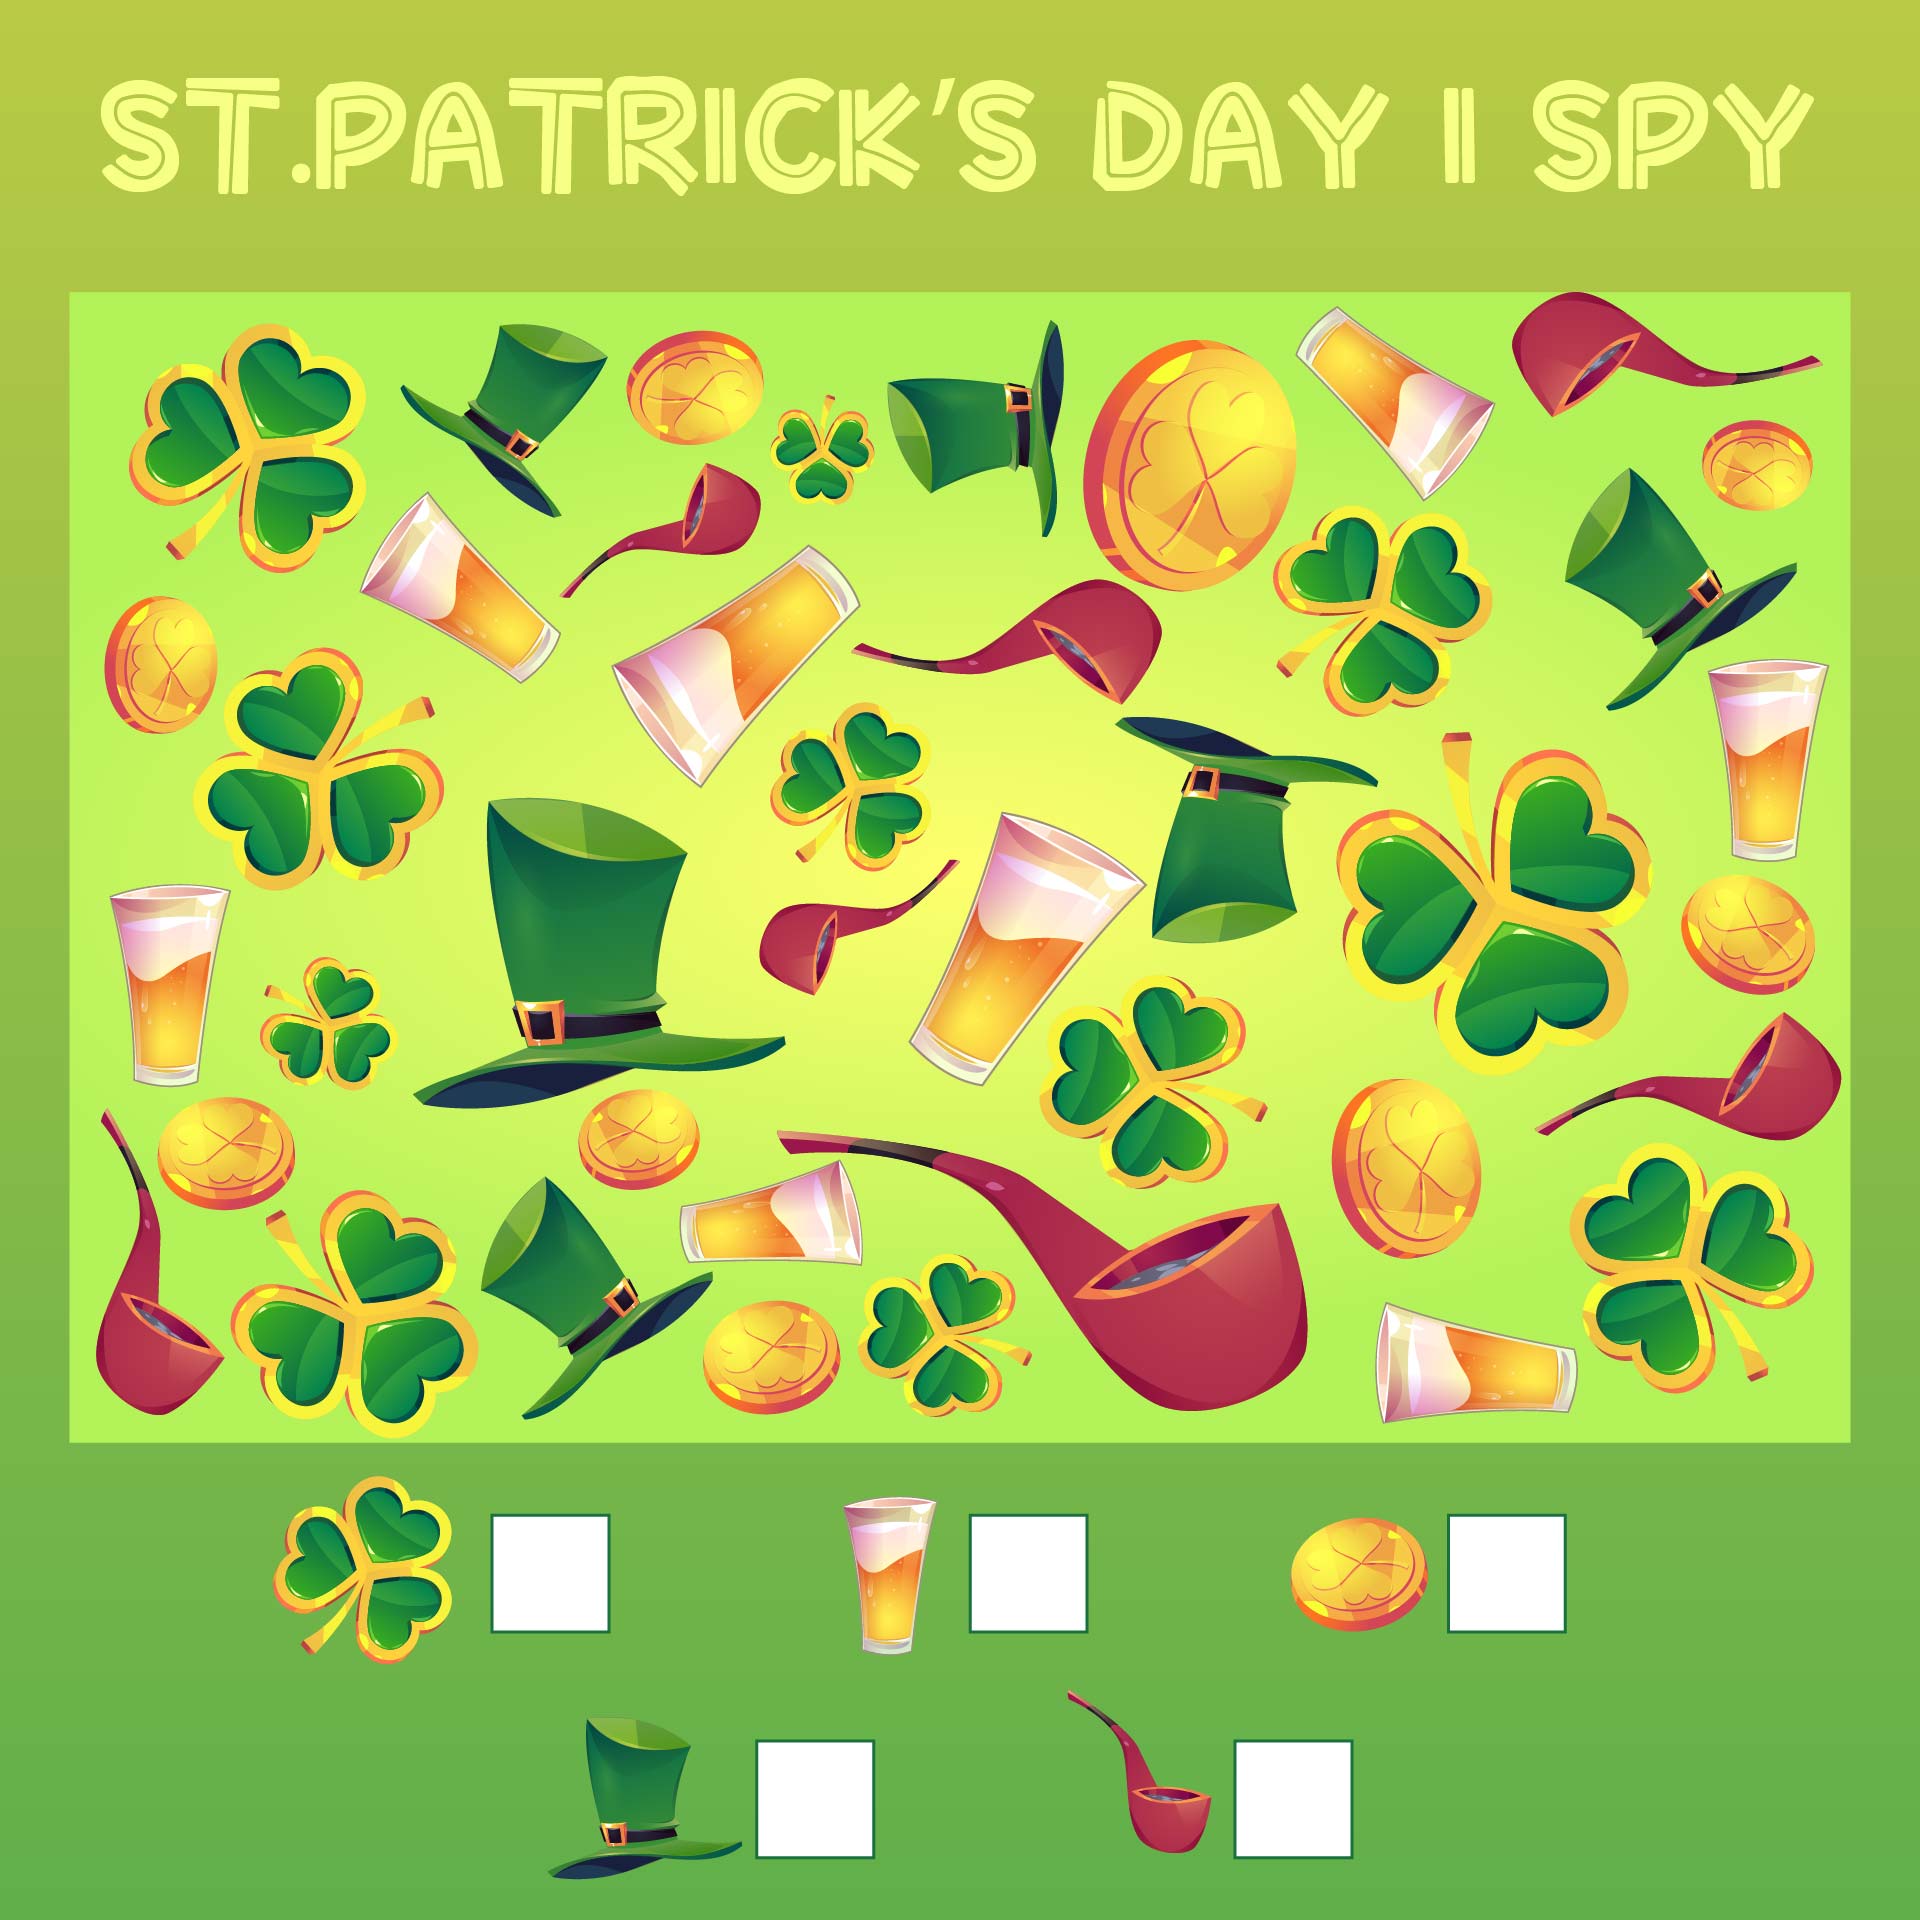 Printable St Patricks Day I Spy Game